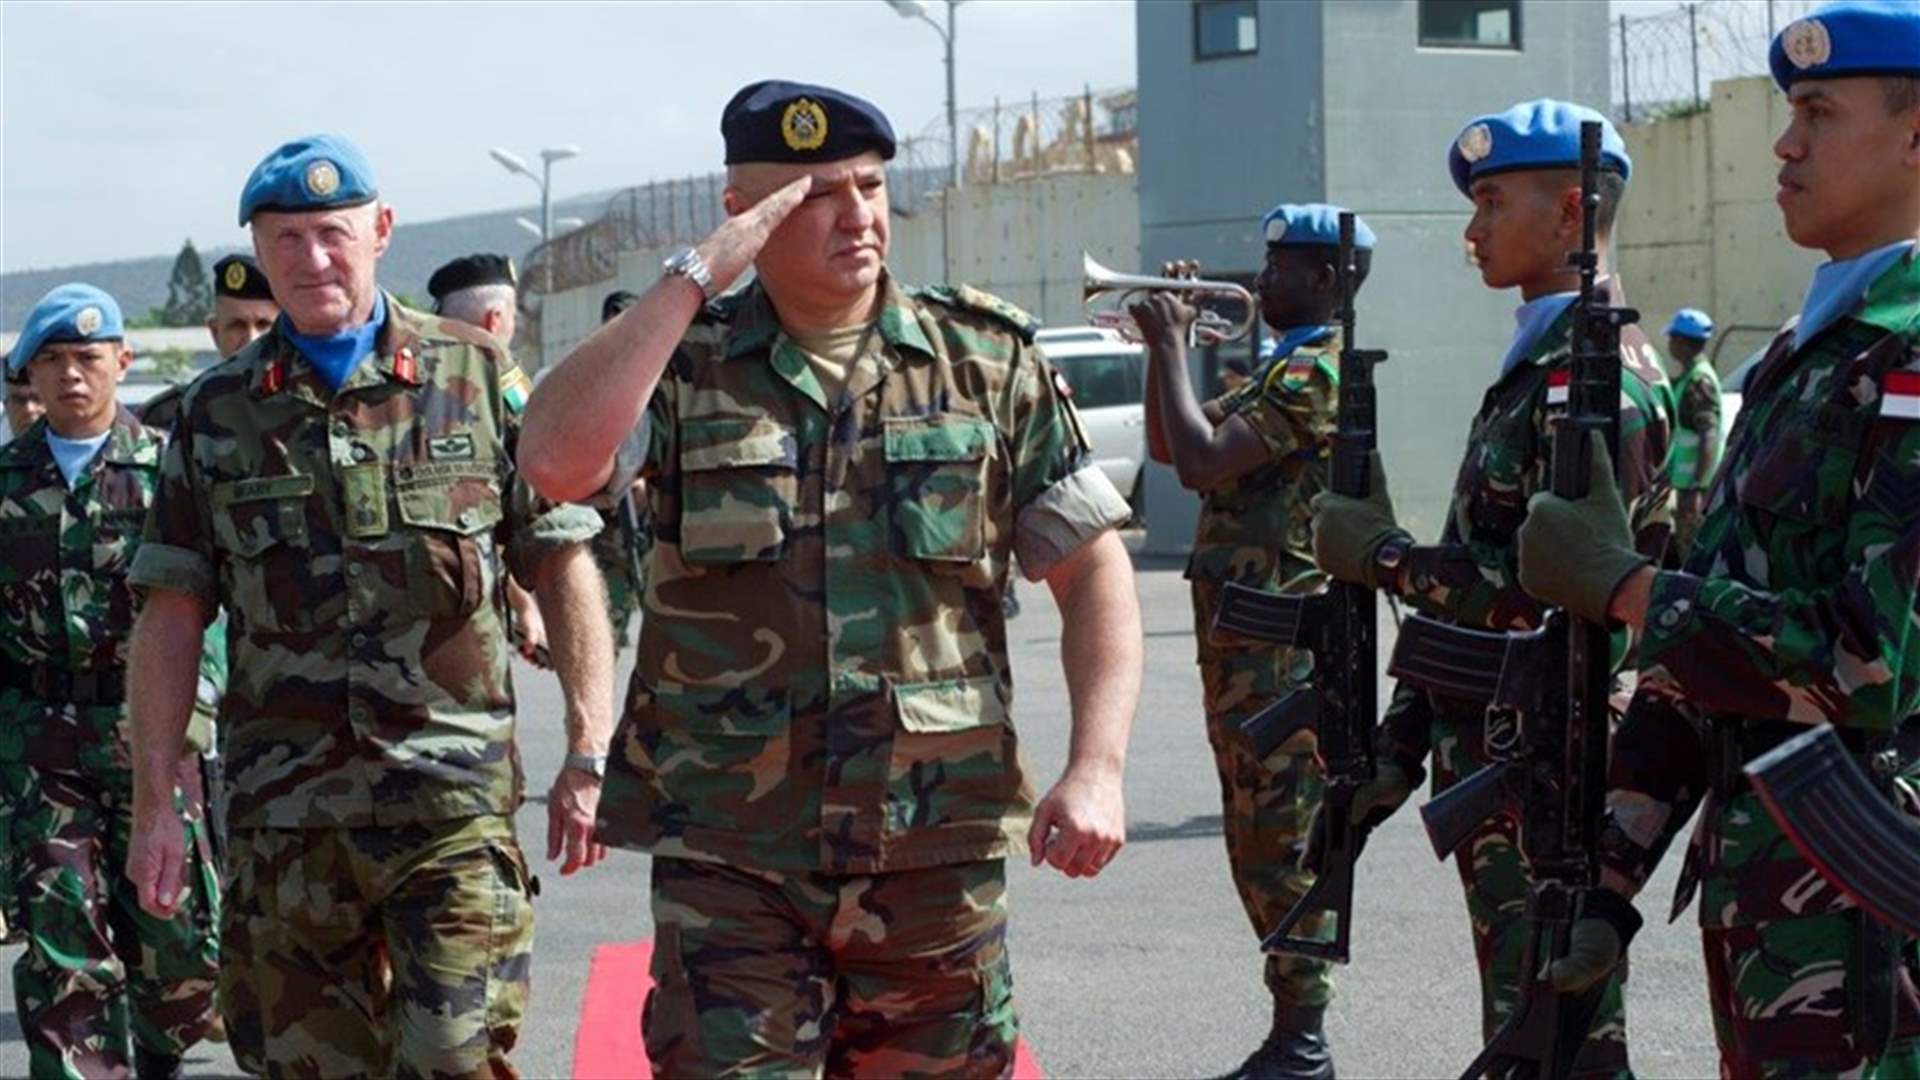 قائد الجيش زار مقر اليونيفيل وبحث مع قيادة قوات الطوارىء في تعزيز الانشطة والتعاون